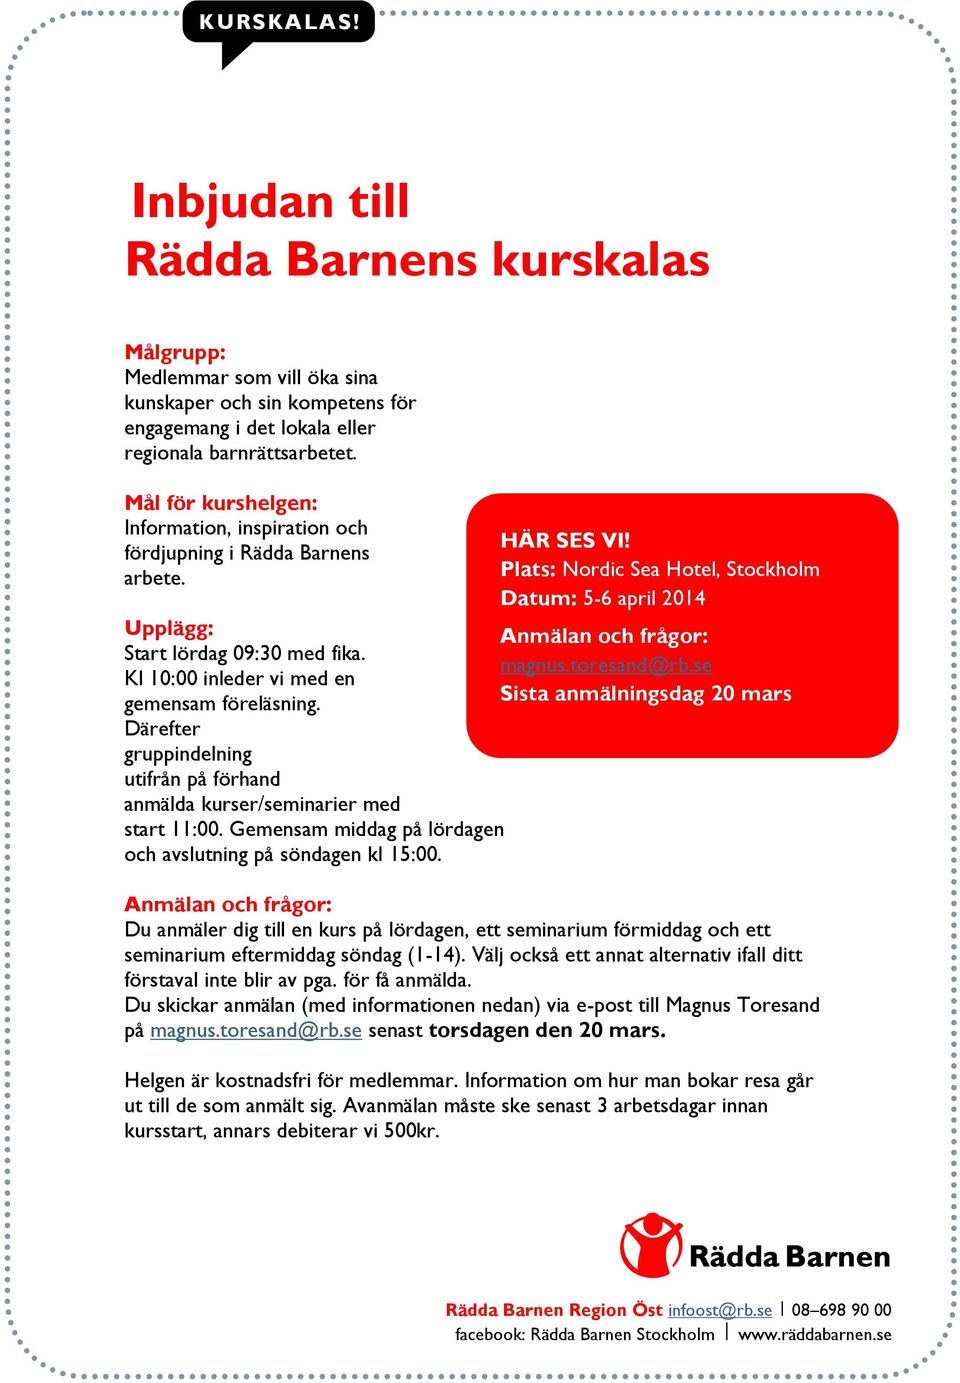 Plats: Nordic Sea Hotel, Stockholm Datum: 5-6 april 2014 Upplägg: Anmälan och frågor: Start lördag 09:30 med fika. magnus.toresand@rb.se Kl 10:00 inleder vi med en gemensam föreläsning.